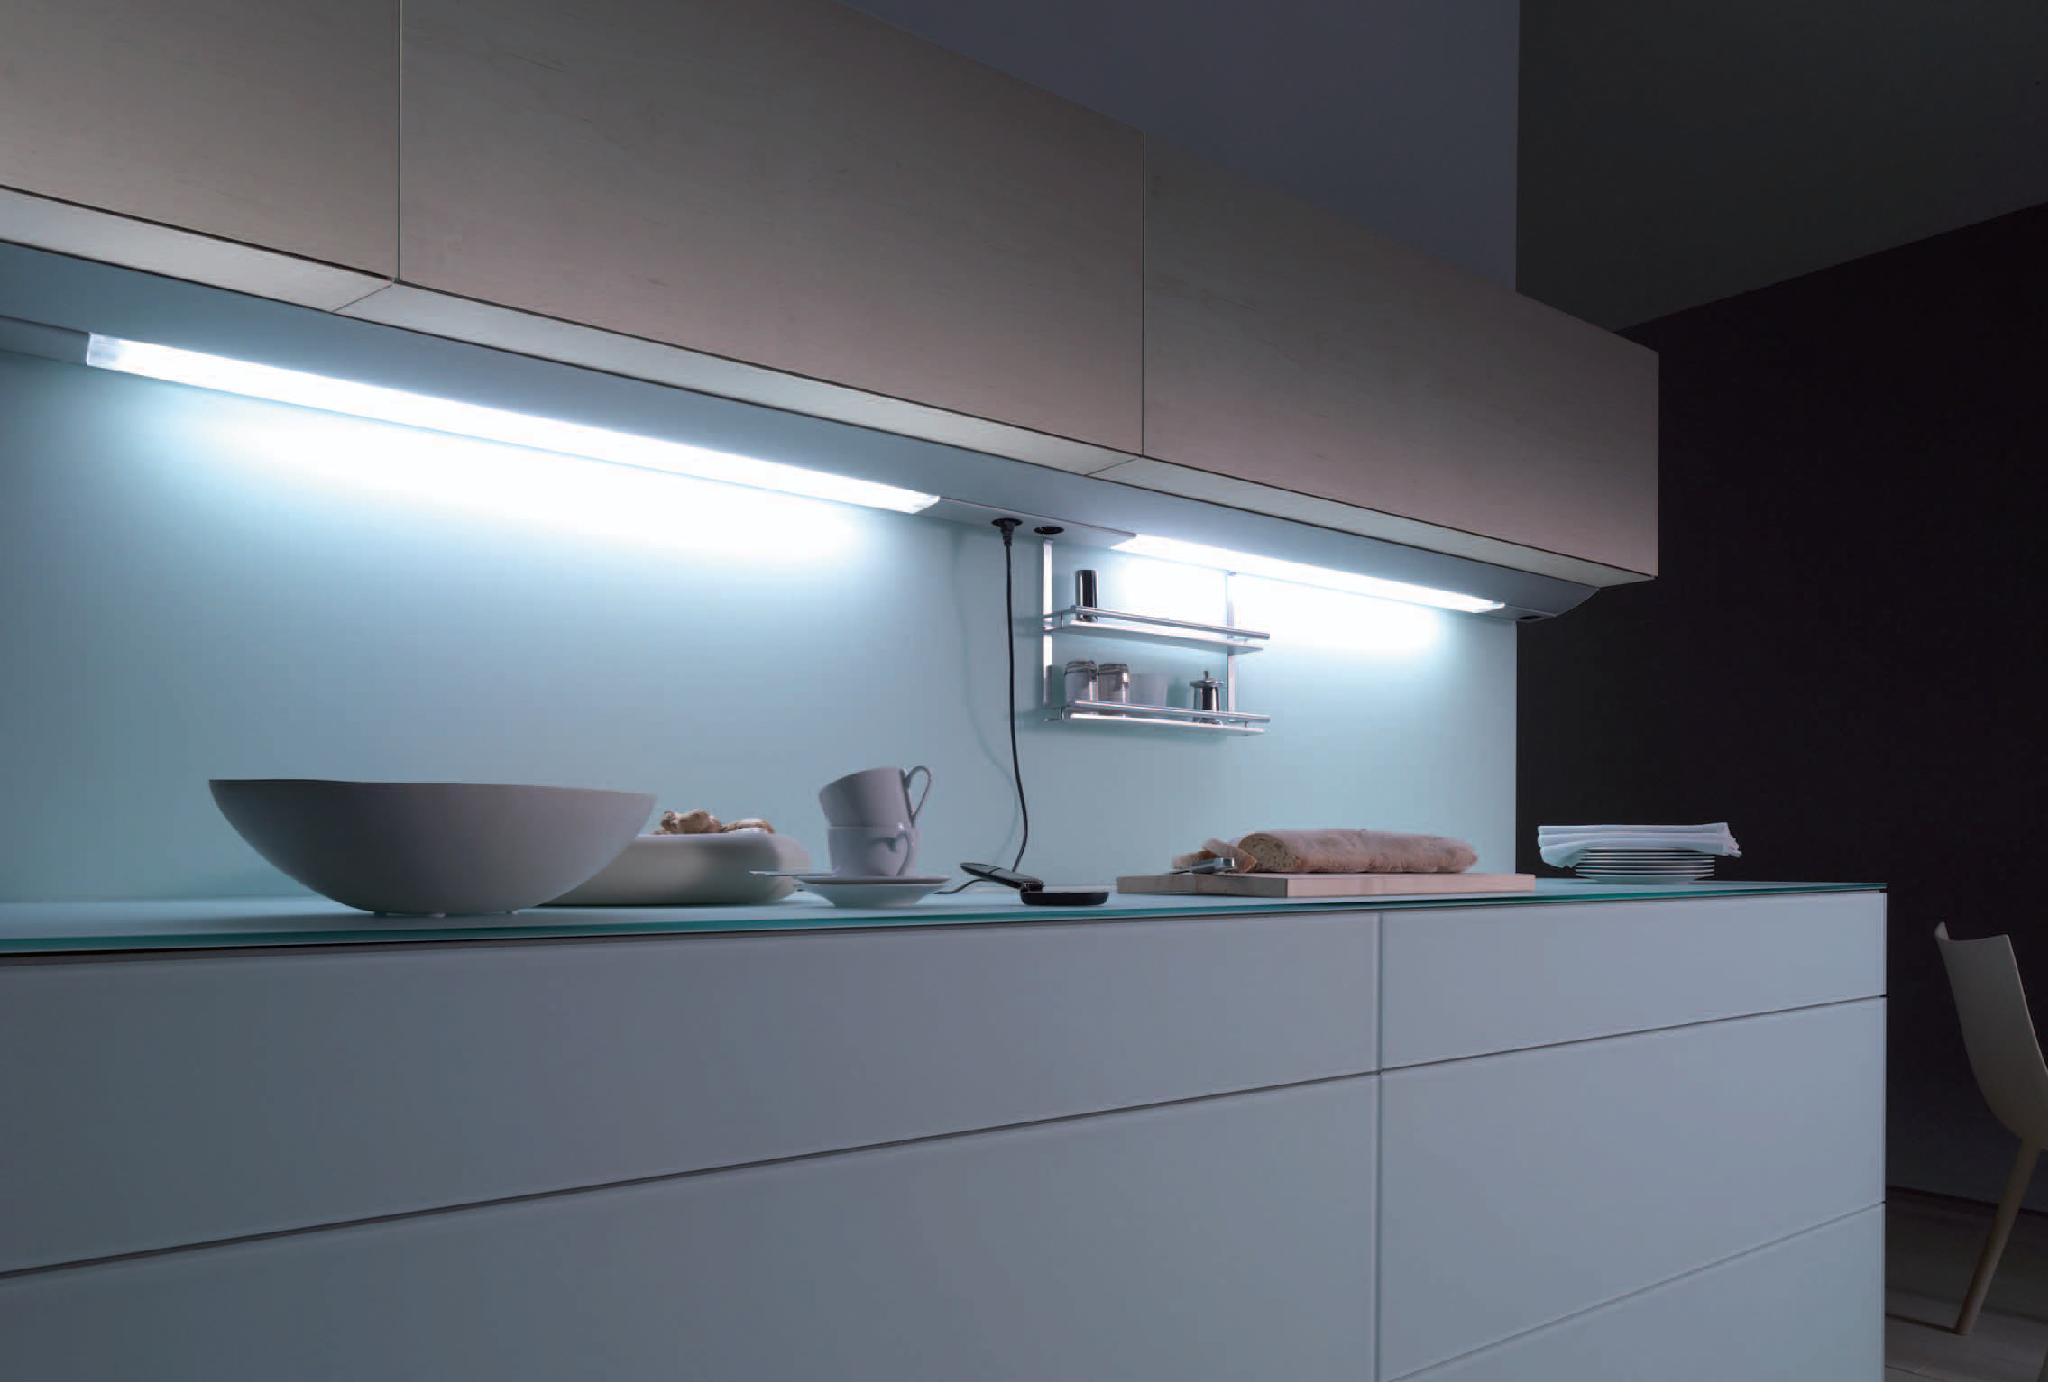 Подсветить подсветка. Линейный светильник Obi Kitchen led-144. Подсветка столешницы ikea для кухни под шкафы светодиодная. Светильник для подсветки кухни под шкафом поворотный Luka 79154/08/36. Линейный светильник Obi Kitchen led-54.